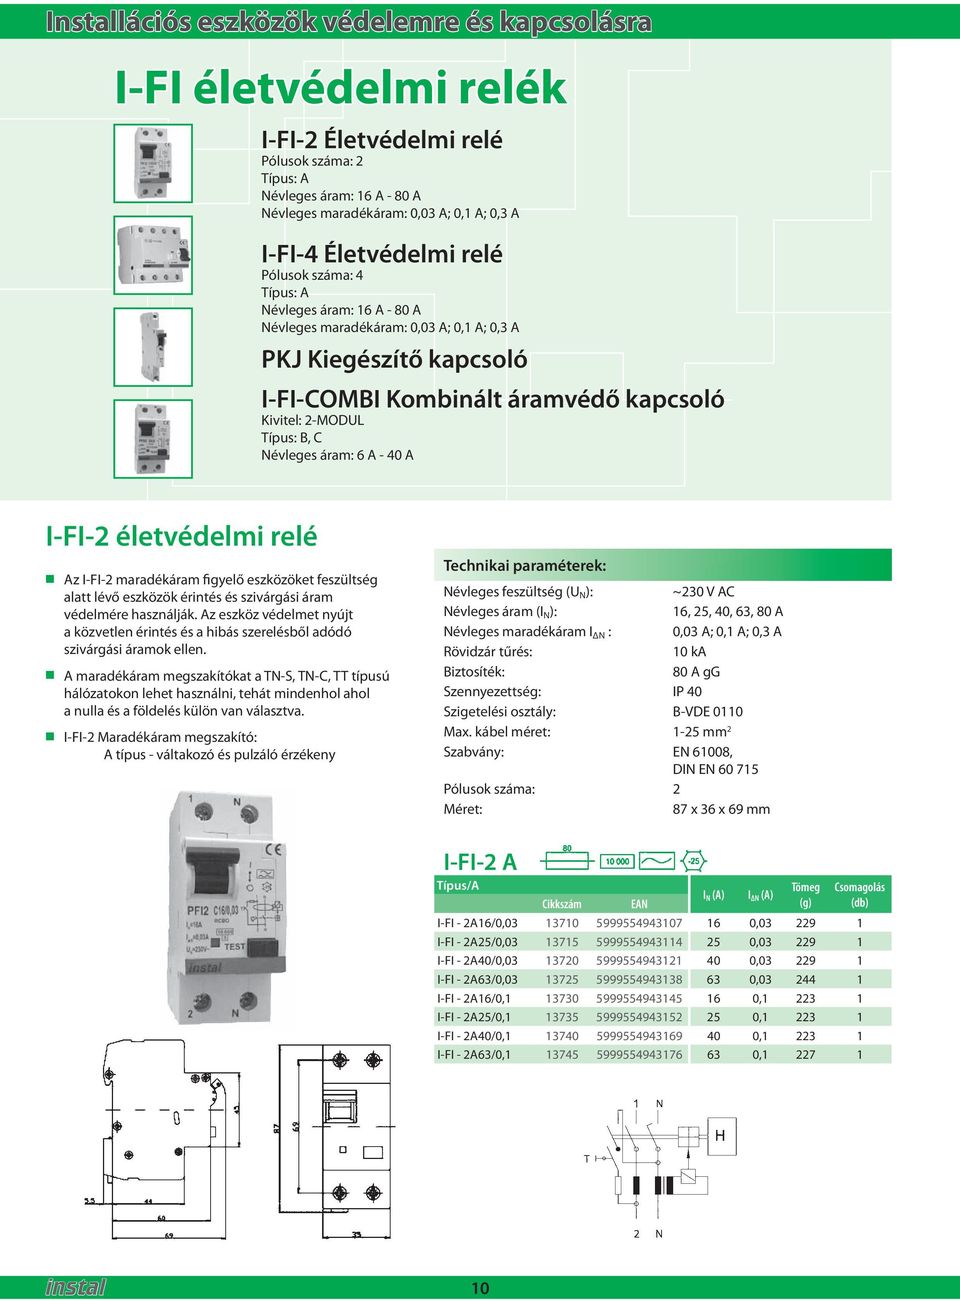 C Névleges áram: 6 A - 40 A I-FI-2 élevédelmi relé Az I-FI-2 maradékáram figyelő eszközöke feszülség ala lévő eszközök érinés és szivárgási áram védelmére használják.